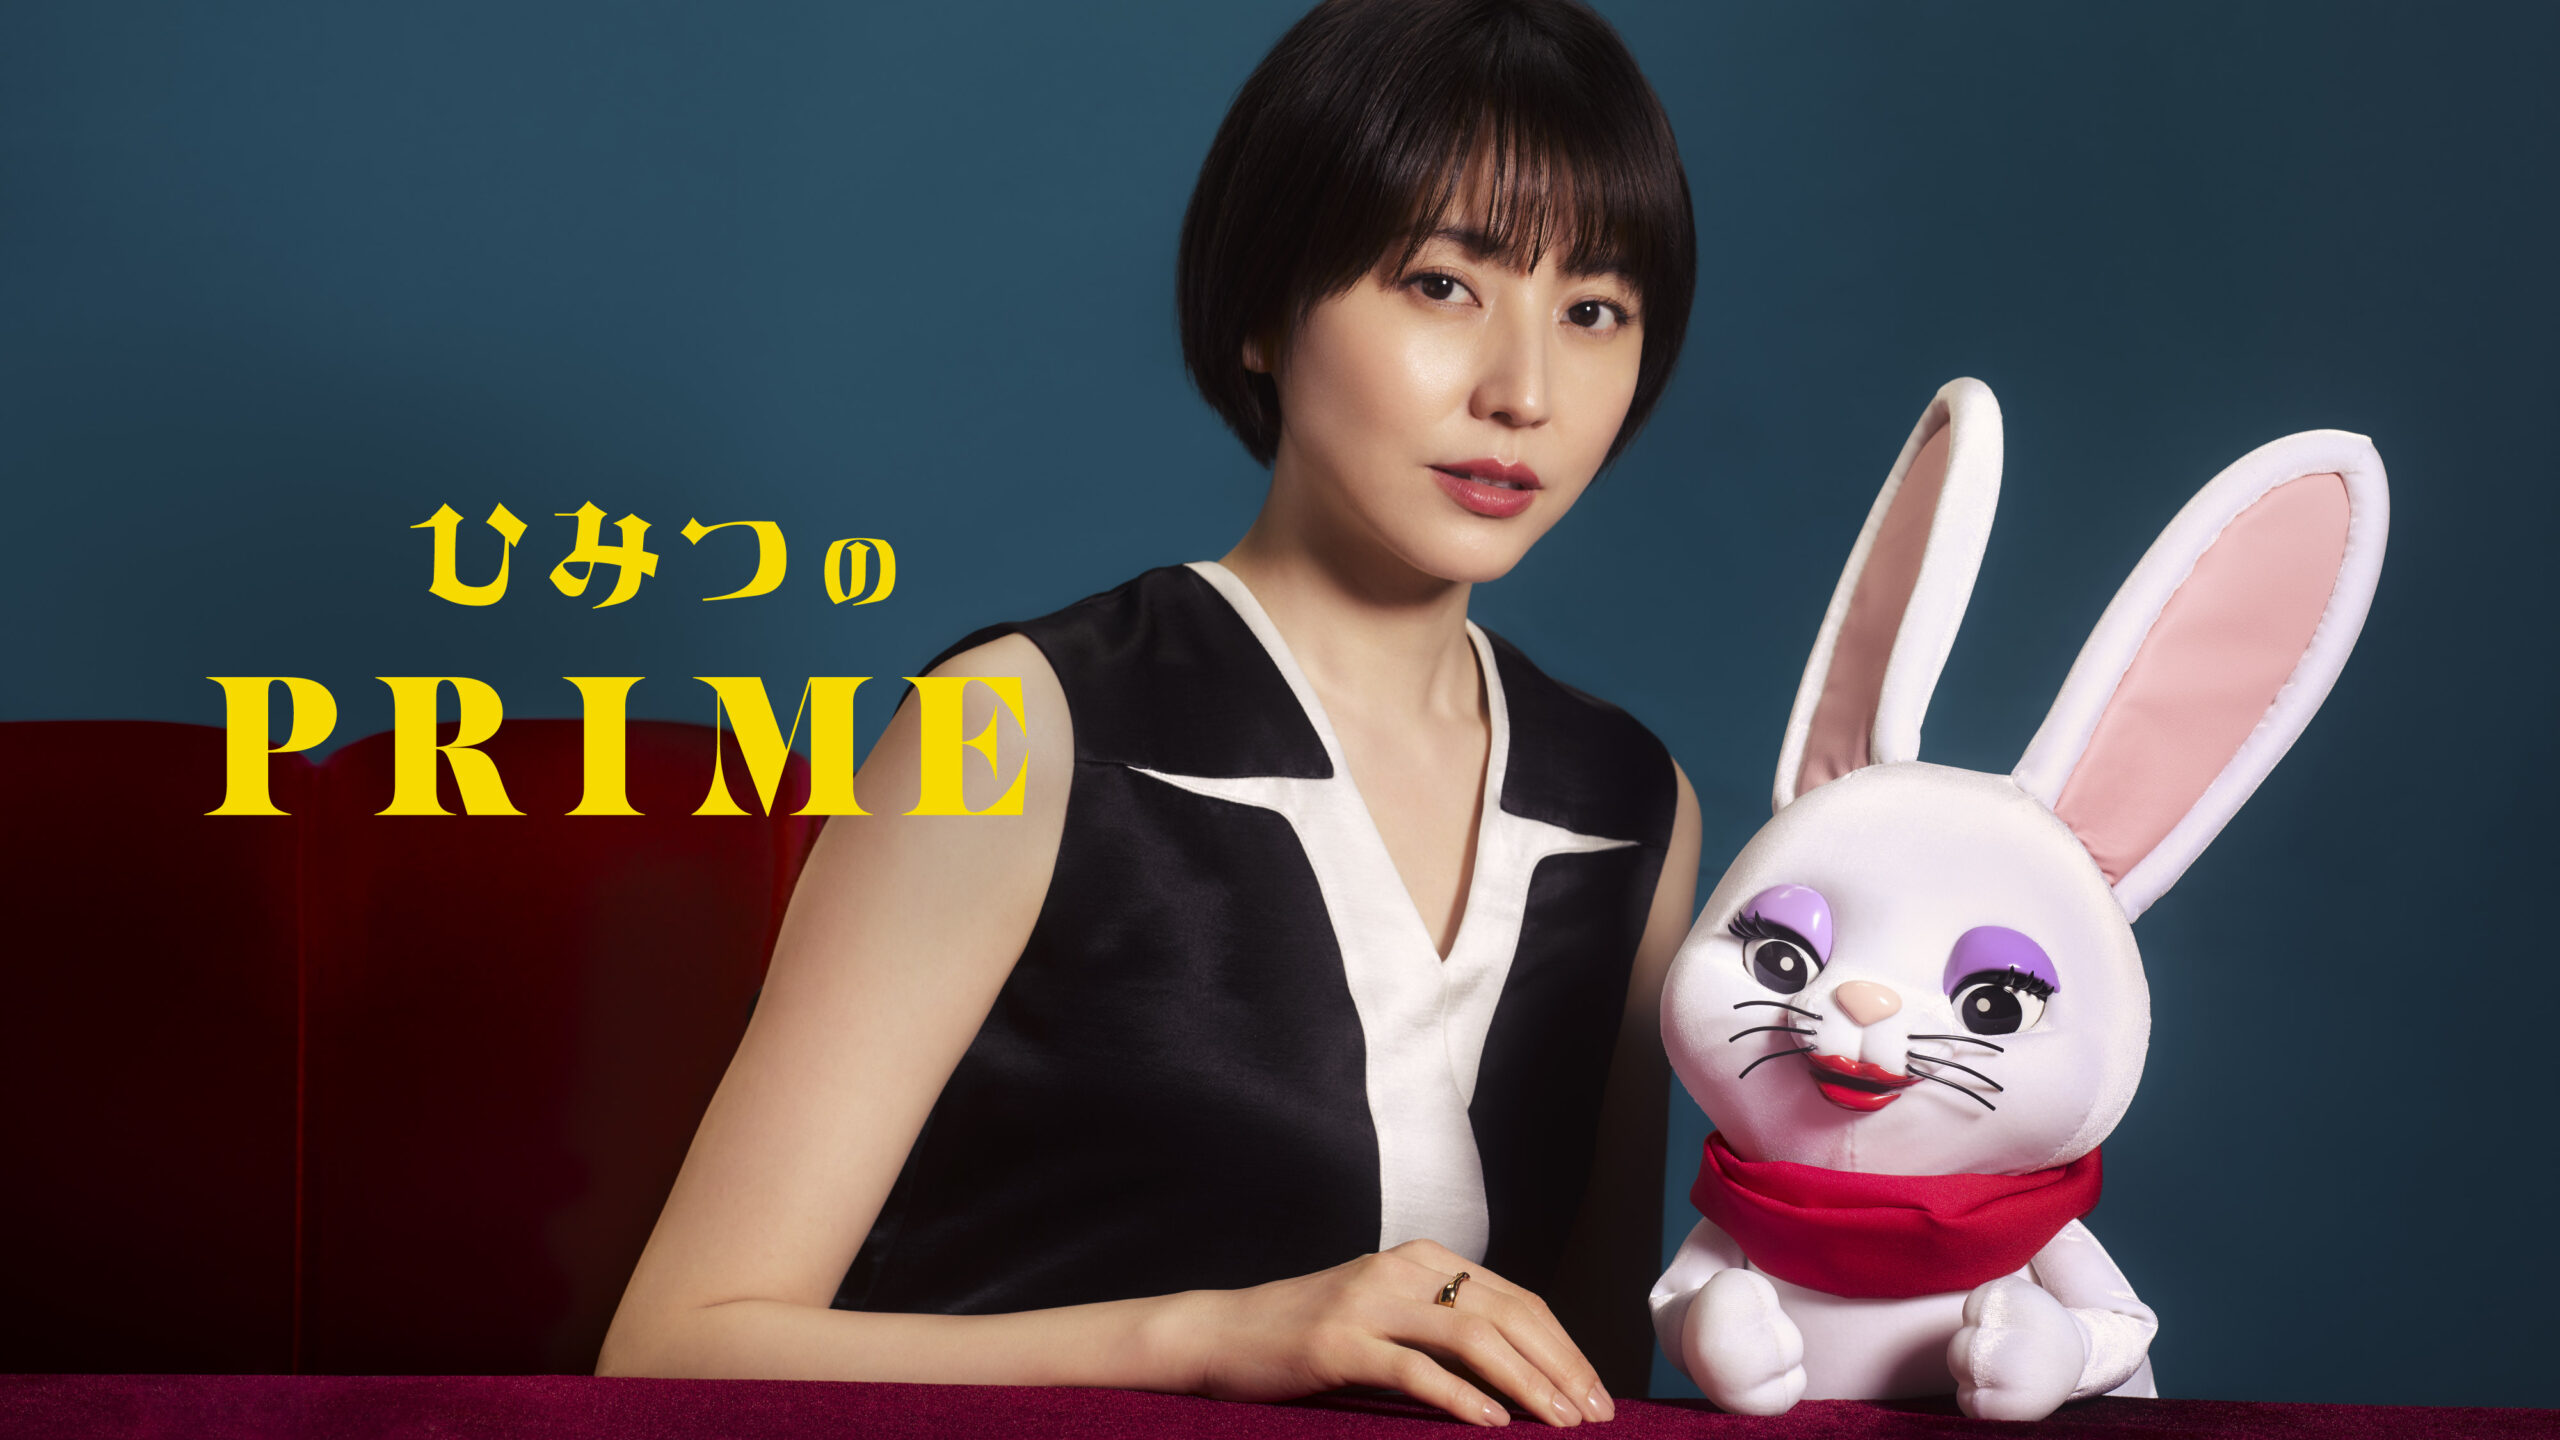 タクシーメディア「TOKYO PRIME」新番組「ひみつのPRIME」放映開始メインキャラクター声優にMEGUMIさんを起用し、初回ゲストには映画『四月になれば彼女は』から長澤まさみさんが登場